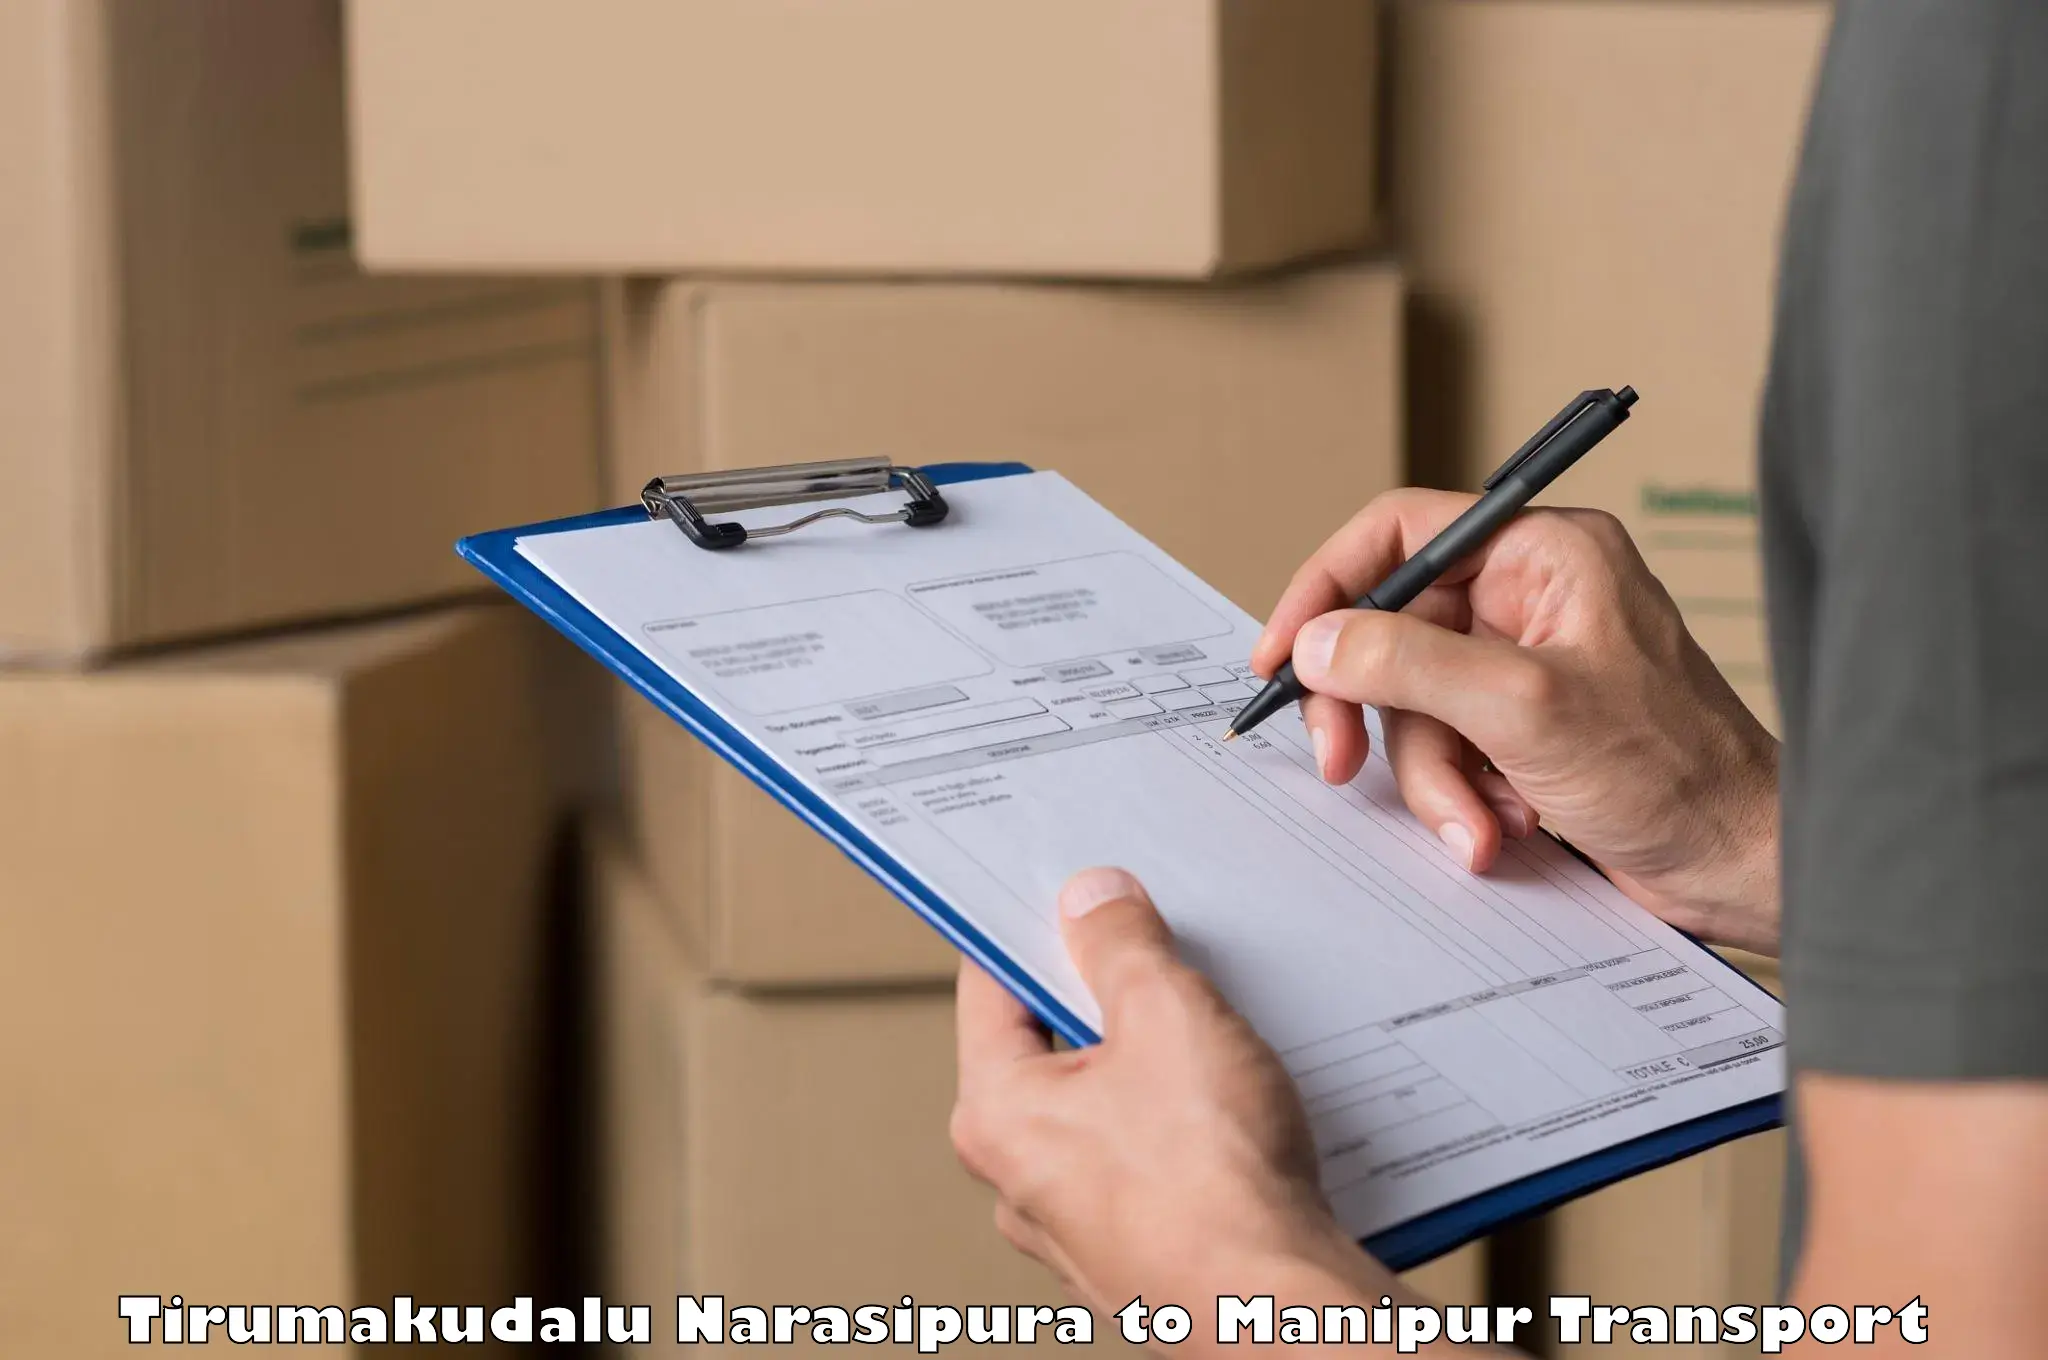 Daily parcel service transport Tirumakudalu Narasipura to Kaptipada